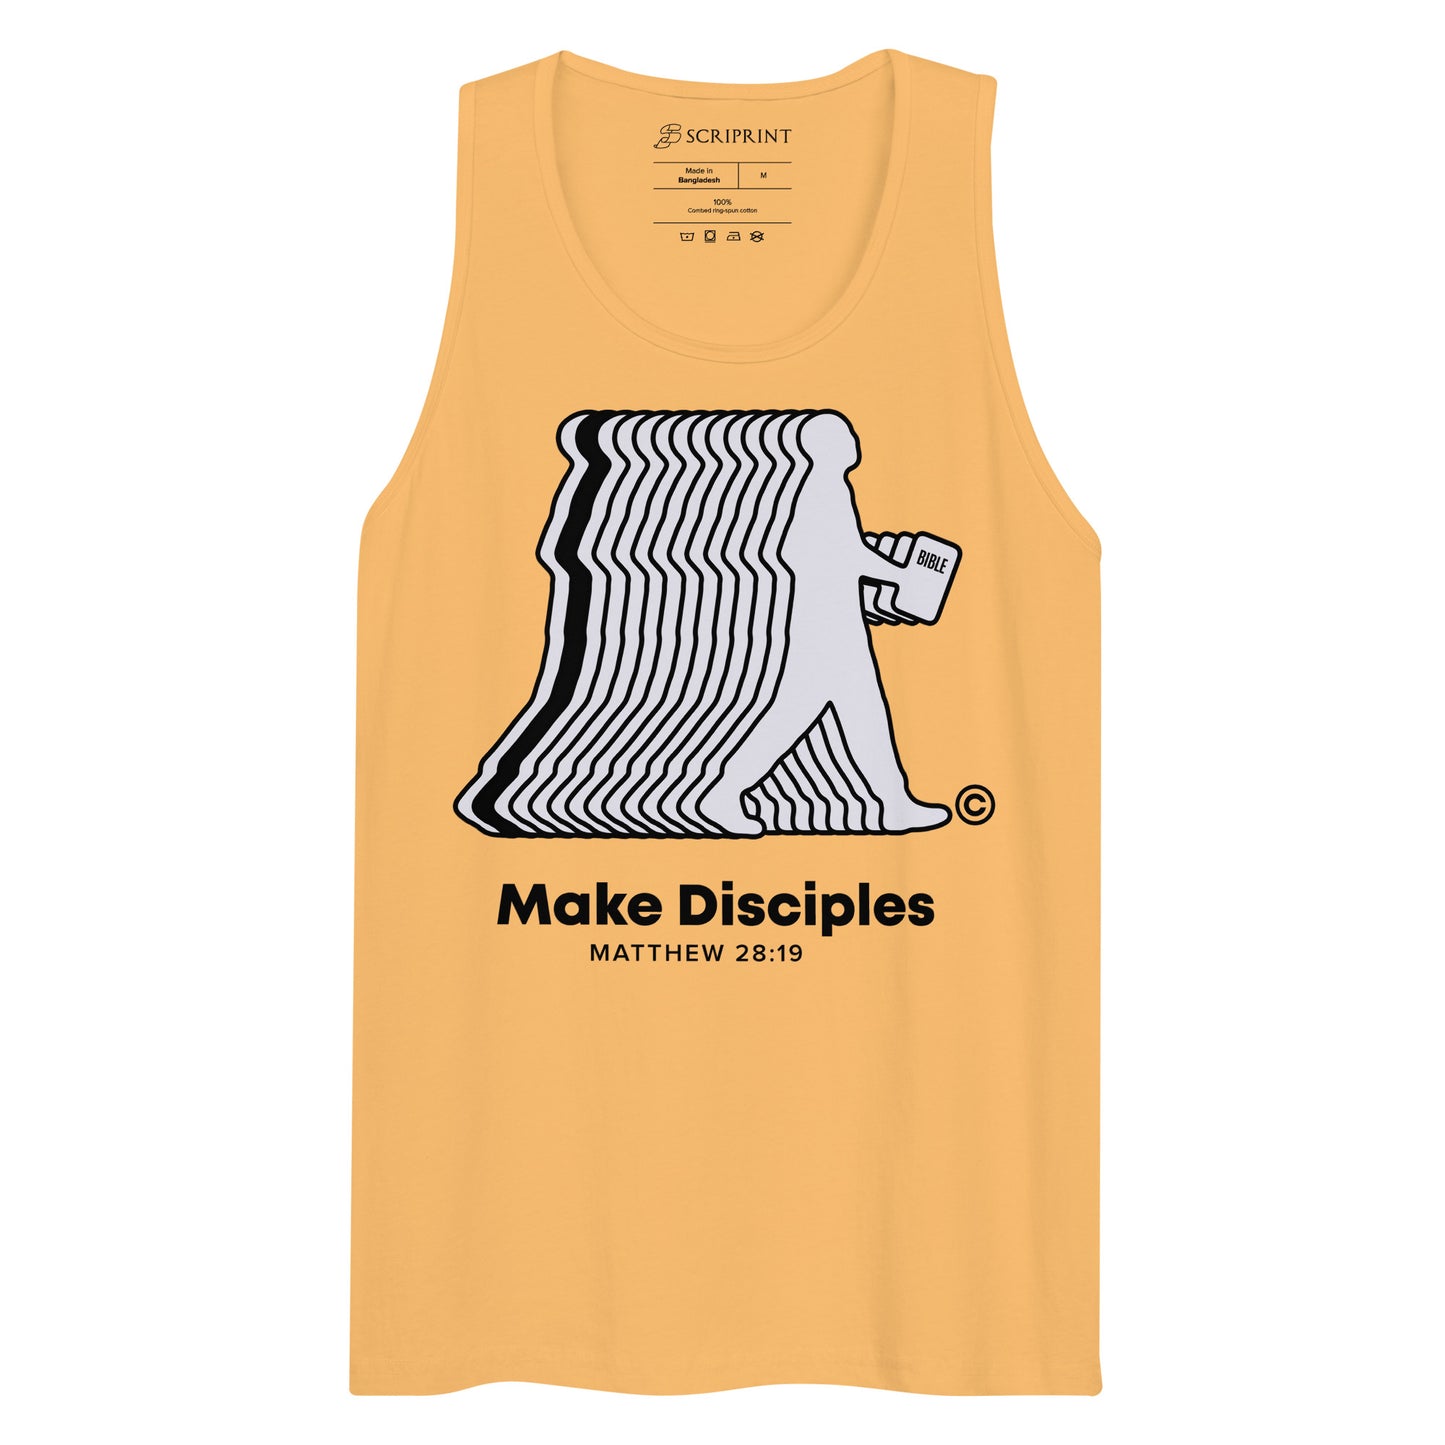 Make Disciples Men’s Premium Tank Top